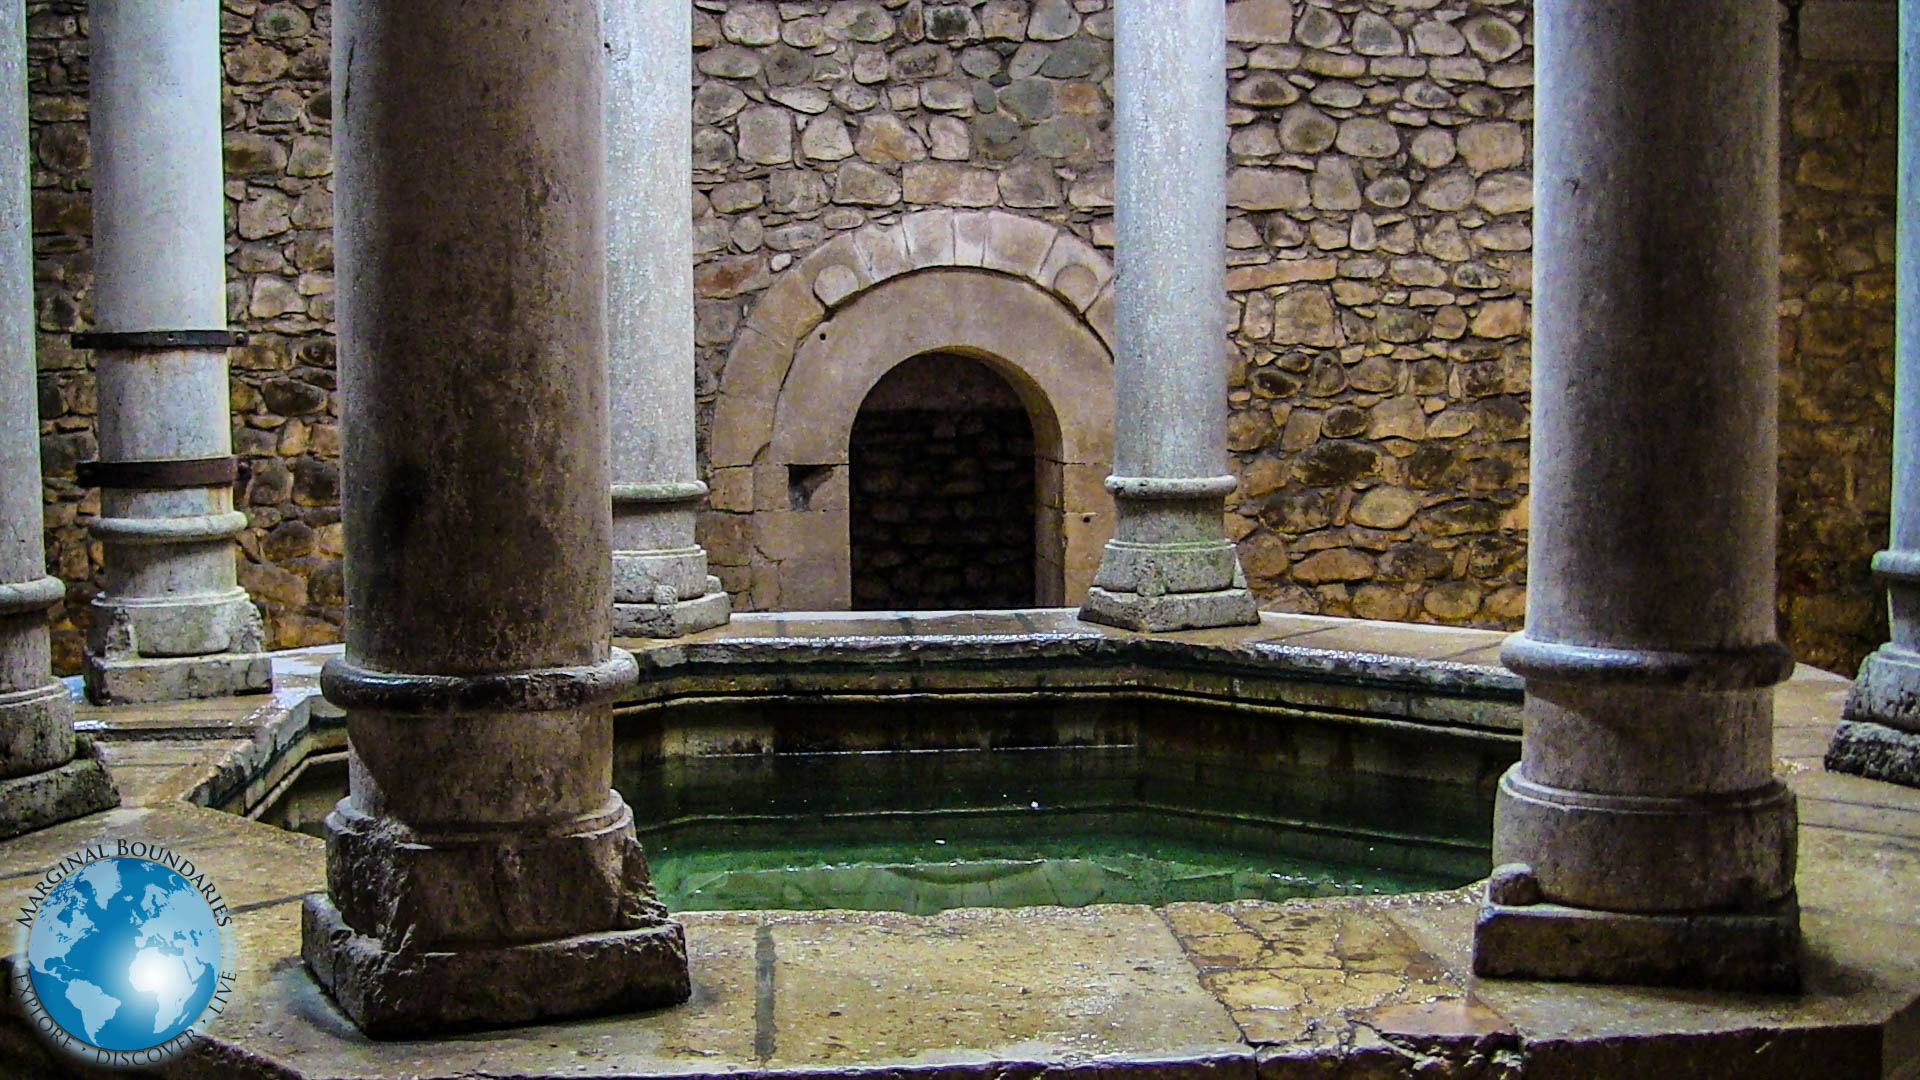 The Arabian Bath House in Girona